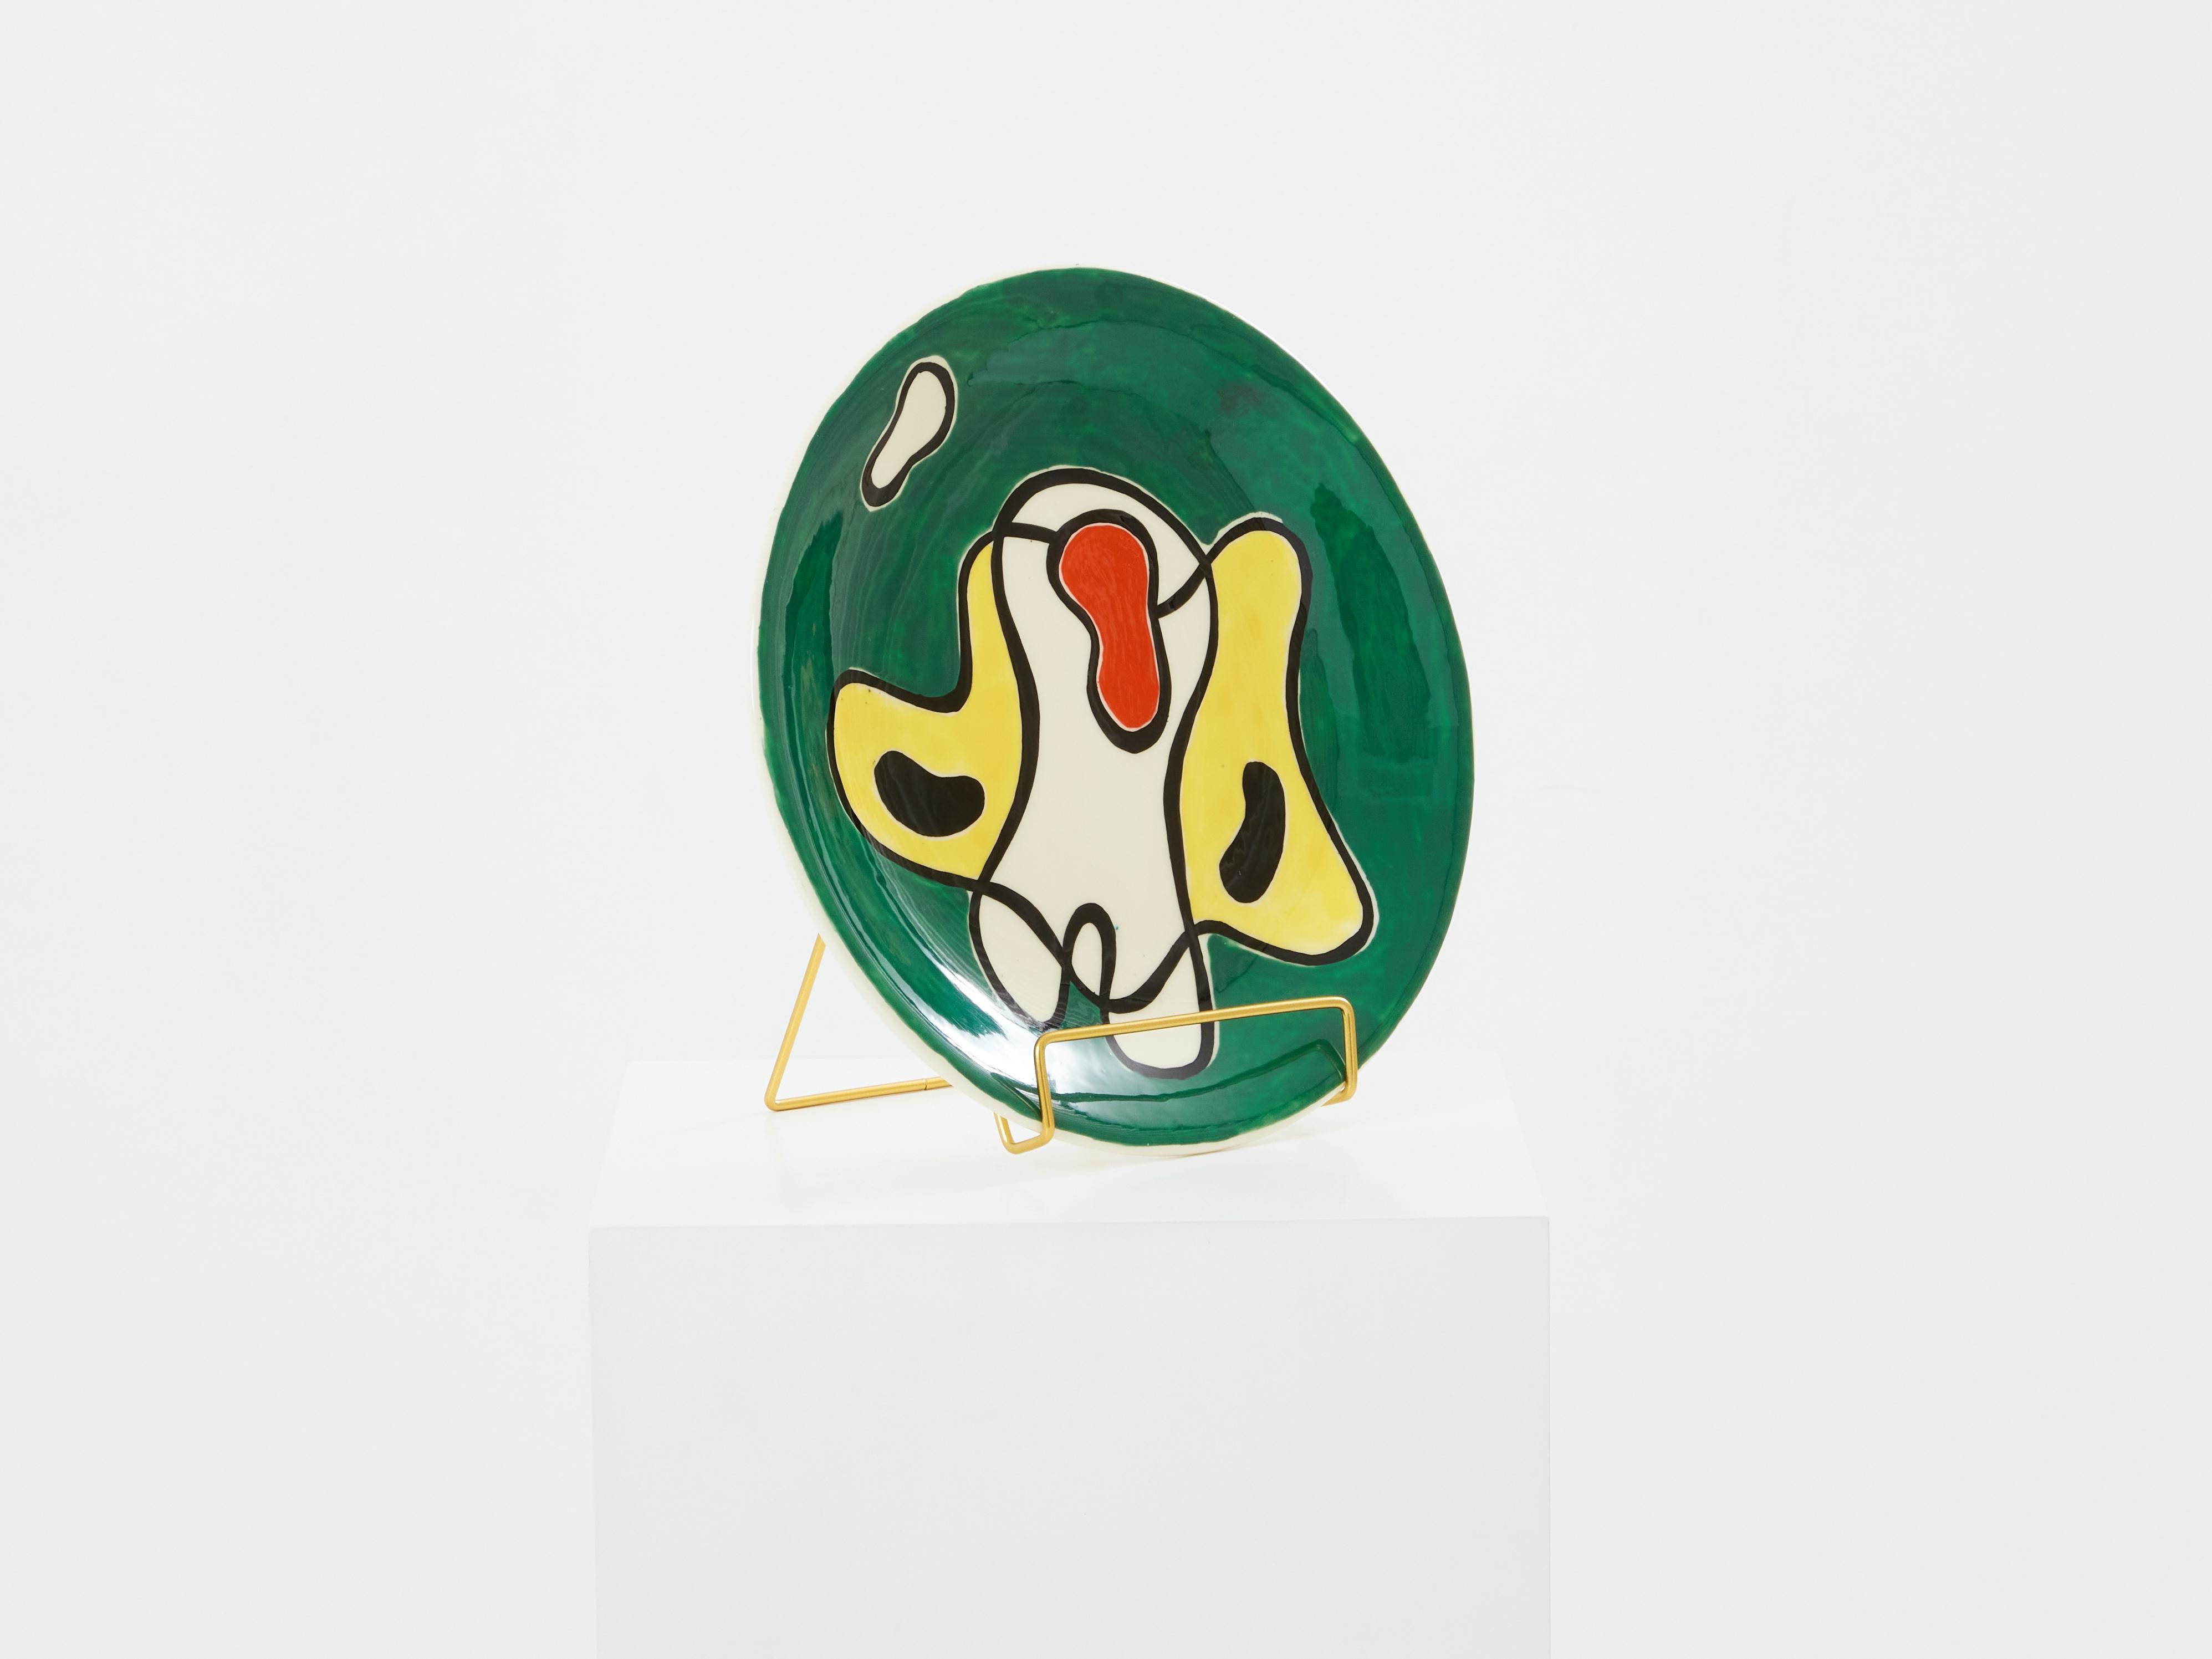 Cette assiette ronde en céramique émaillée colorée a été conçue et produite par Roland Brice dans les années 1950 dans son atelier de Biot, une petite ville près de Vallauris, dans le sud de la France. Roland Brice est l'ancien élève de Fernand